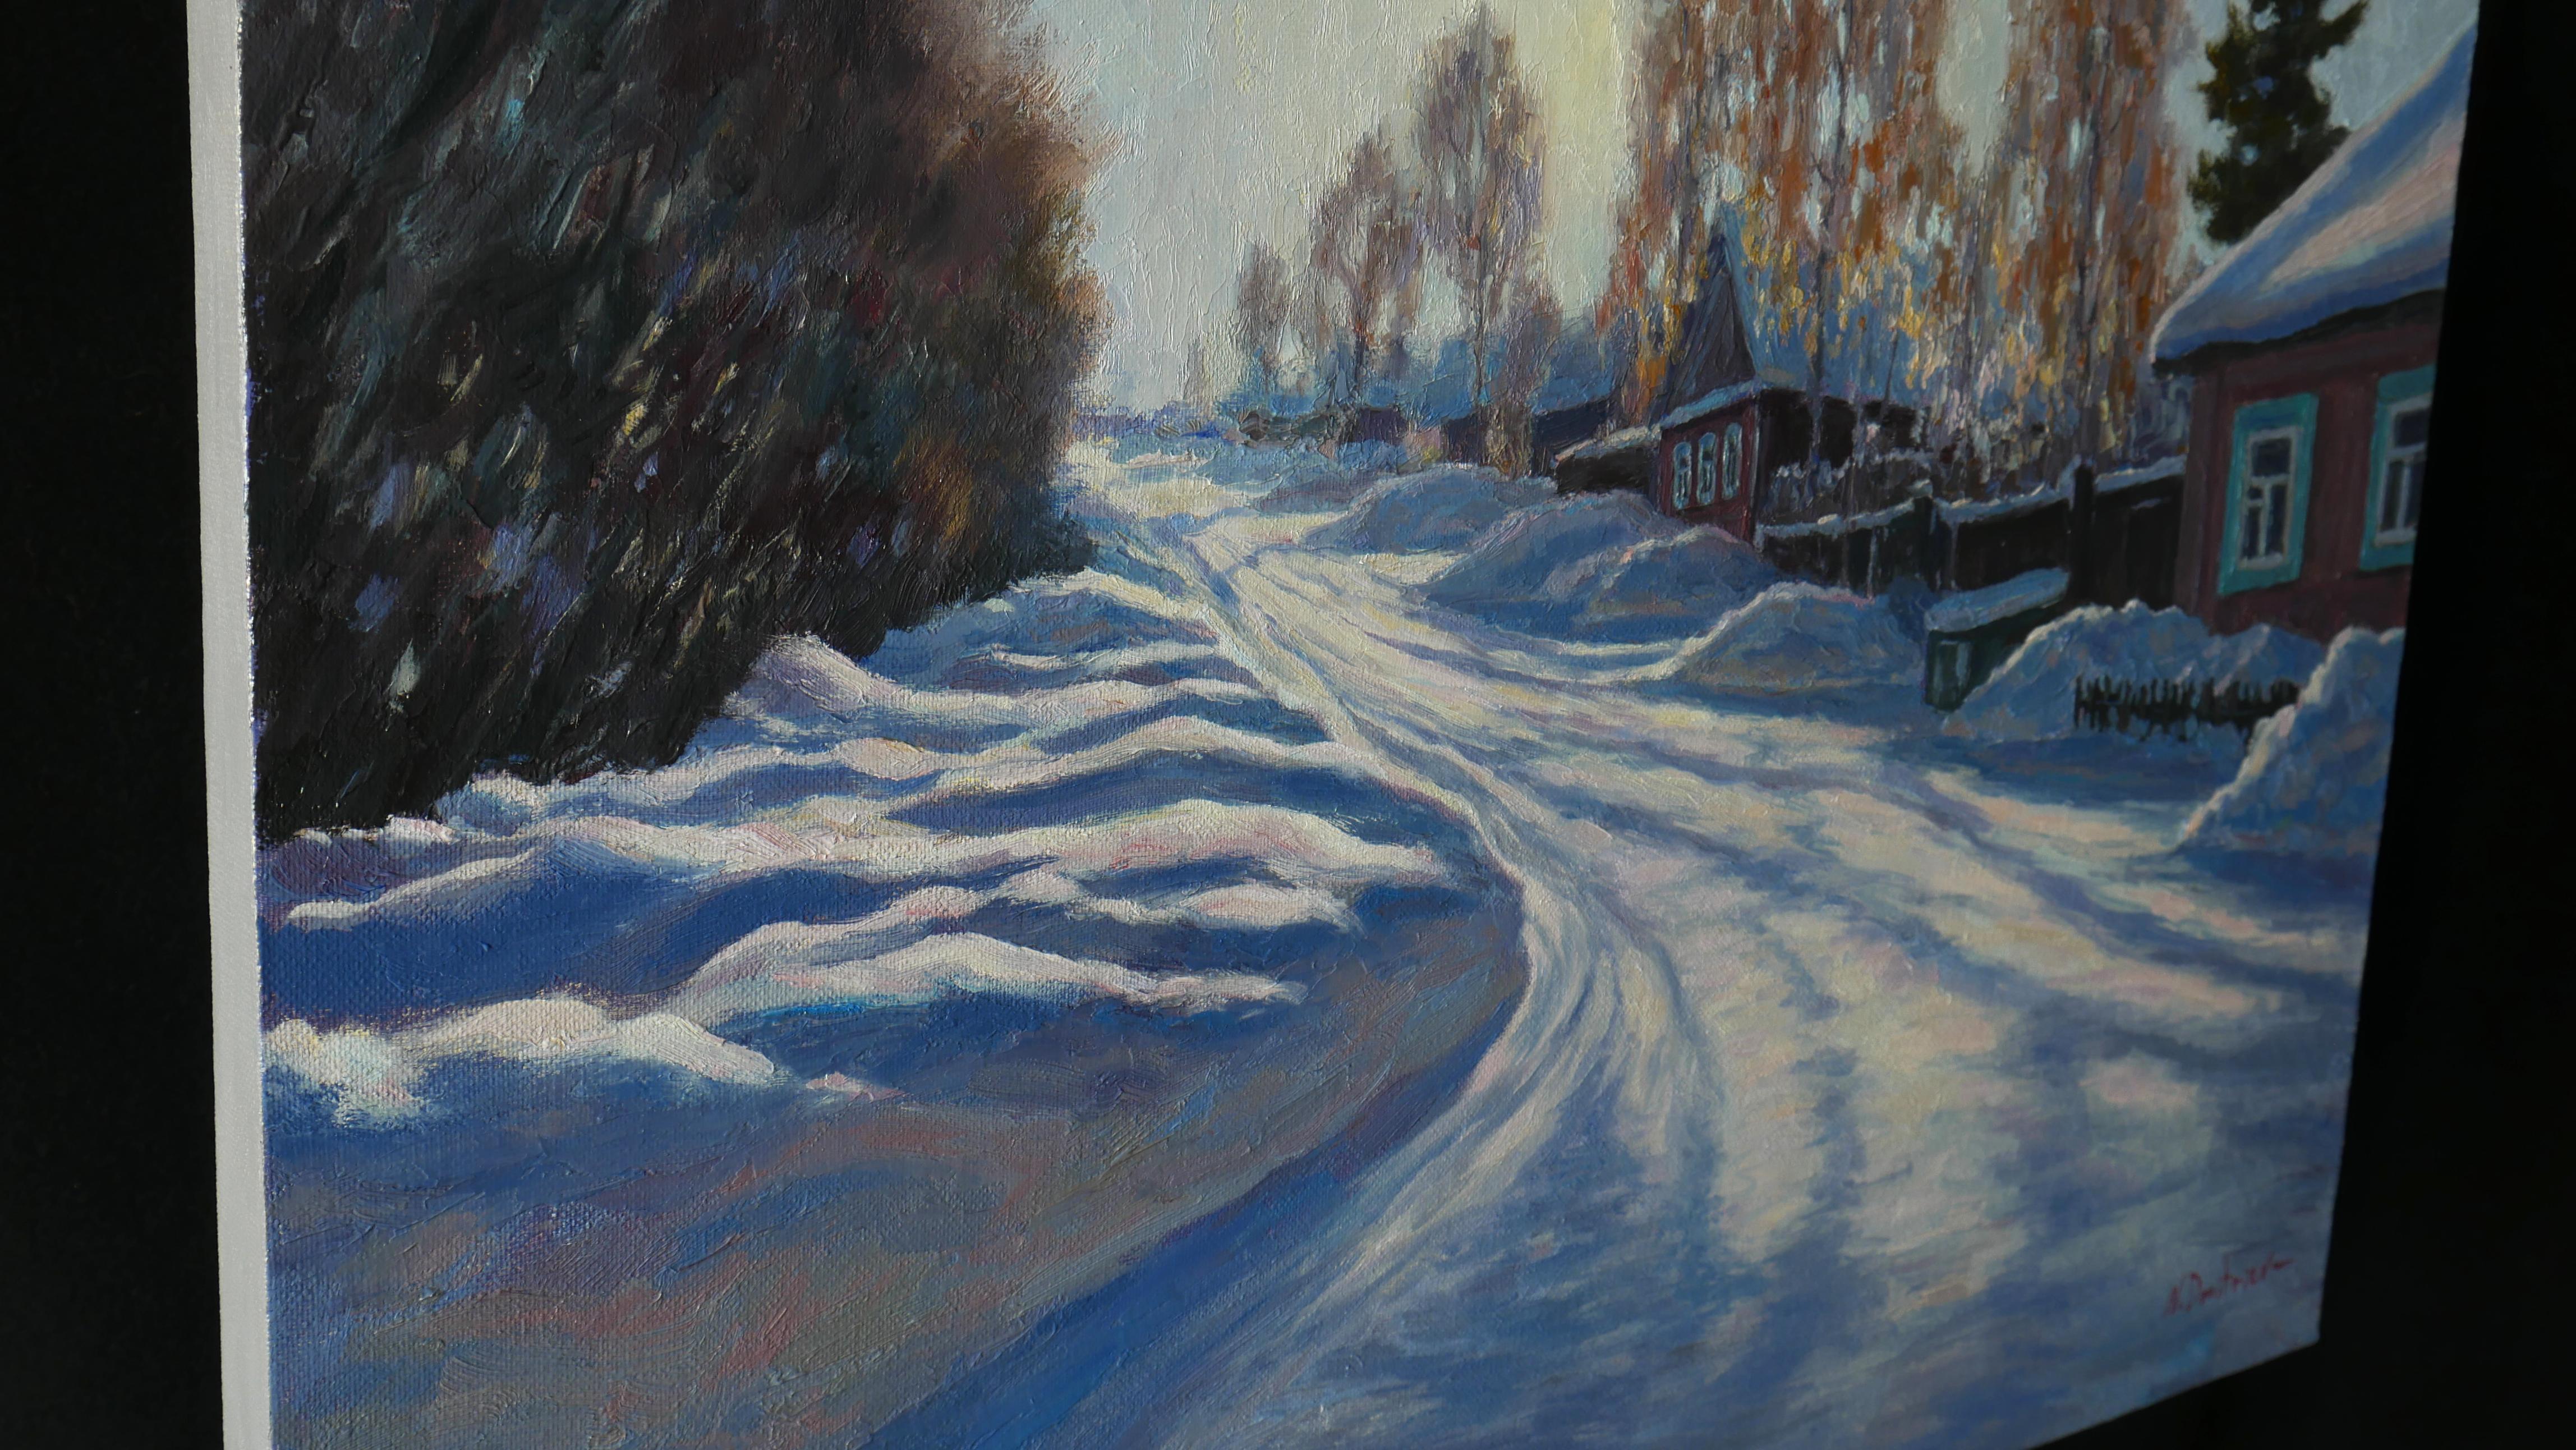 Eine sonnige Winterlandschaft wurde nach dem Leben gemalt, im Stil des Impressionismus. Der Künstler fängt in seinen Gemälden den flüchtigen Zustand der Natur ein und stellt das Spiel der Helldunkelheit dar. Den Details wird große Aufmerksamkeit